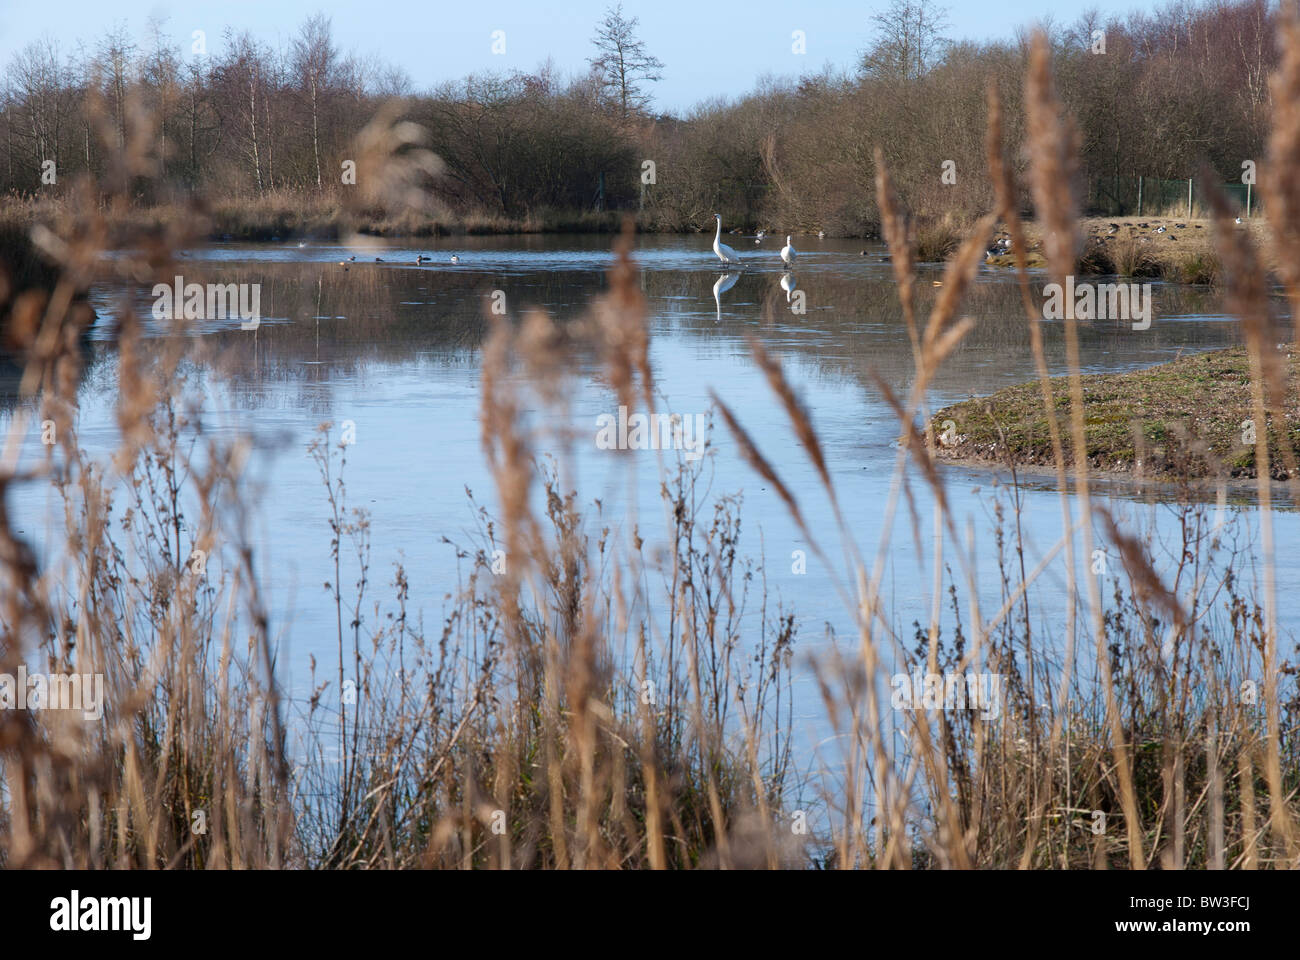 Parc du Marquenterre, oies sur étang gelé Marquenterre's Park, geese on a frozen pond Stock Photo